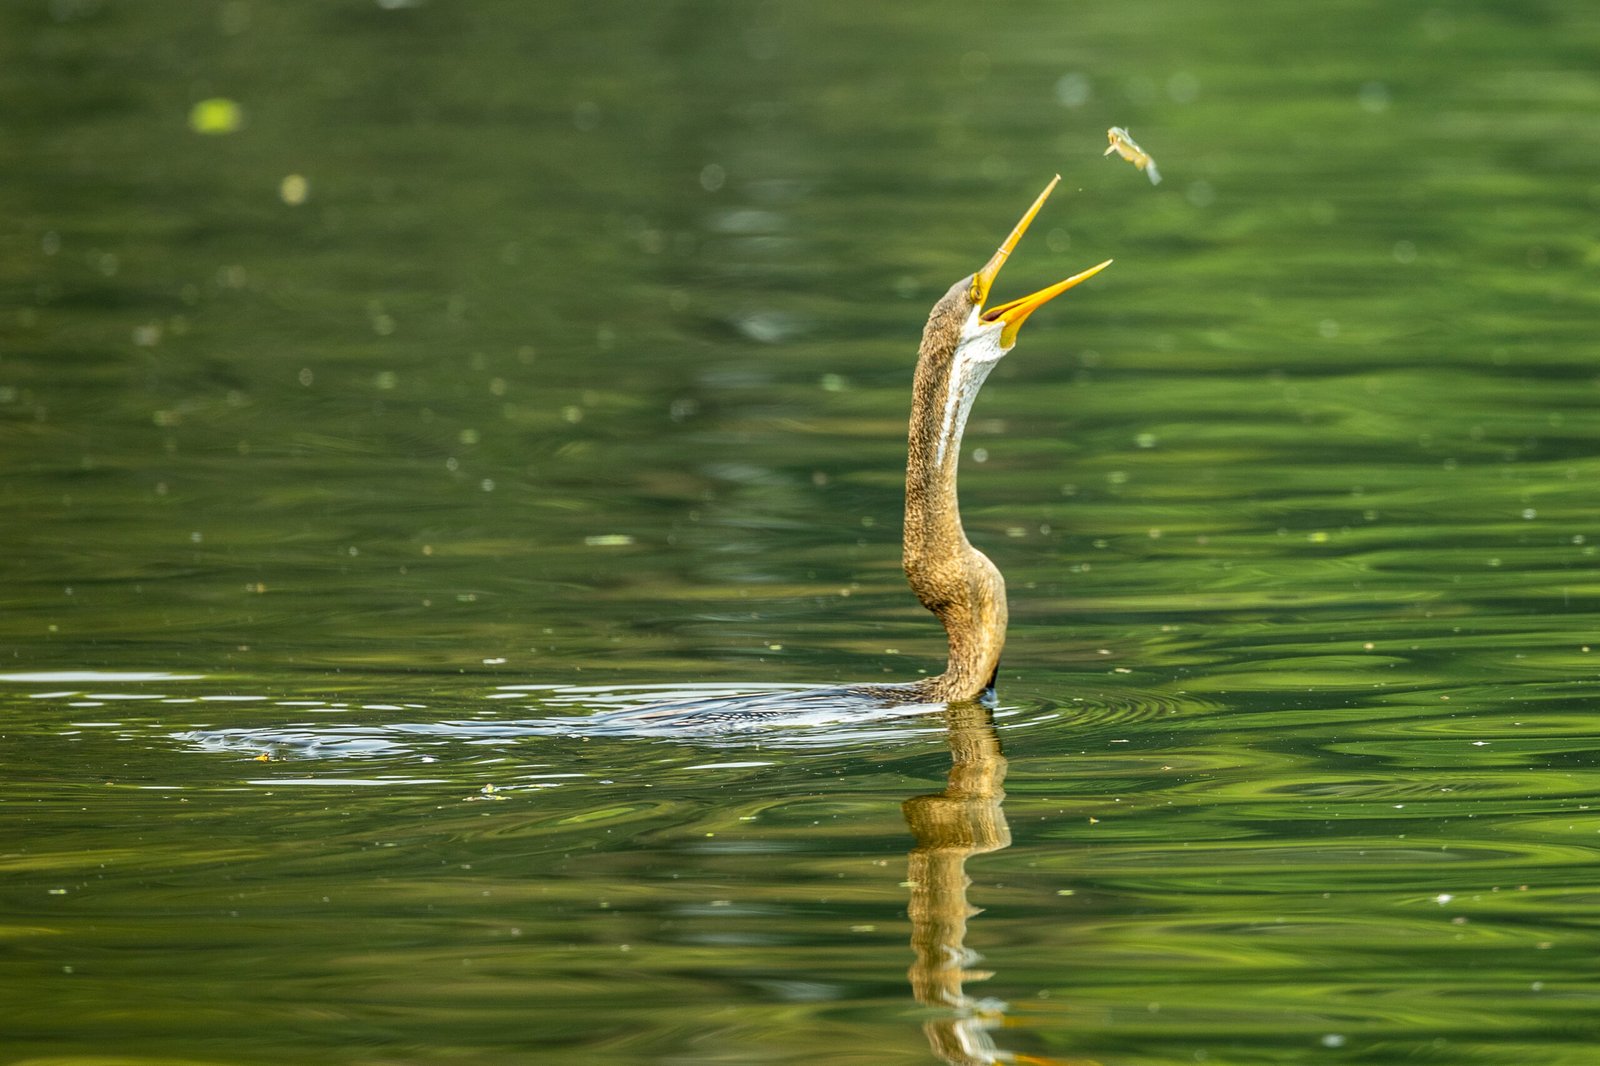 An Oriental Darter tossing fish